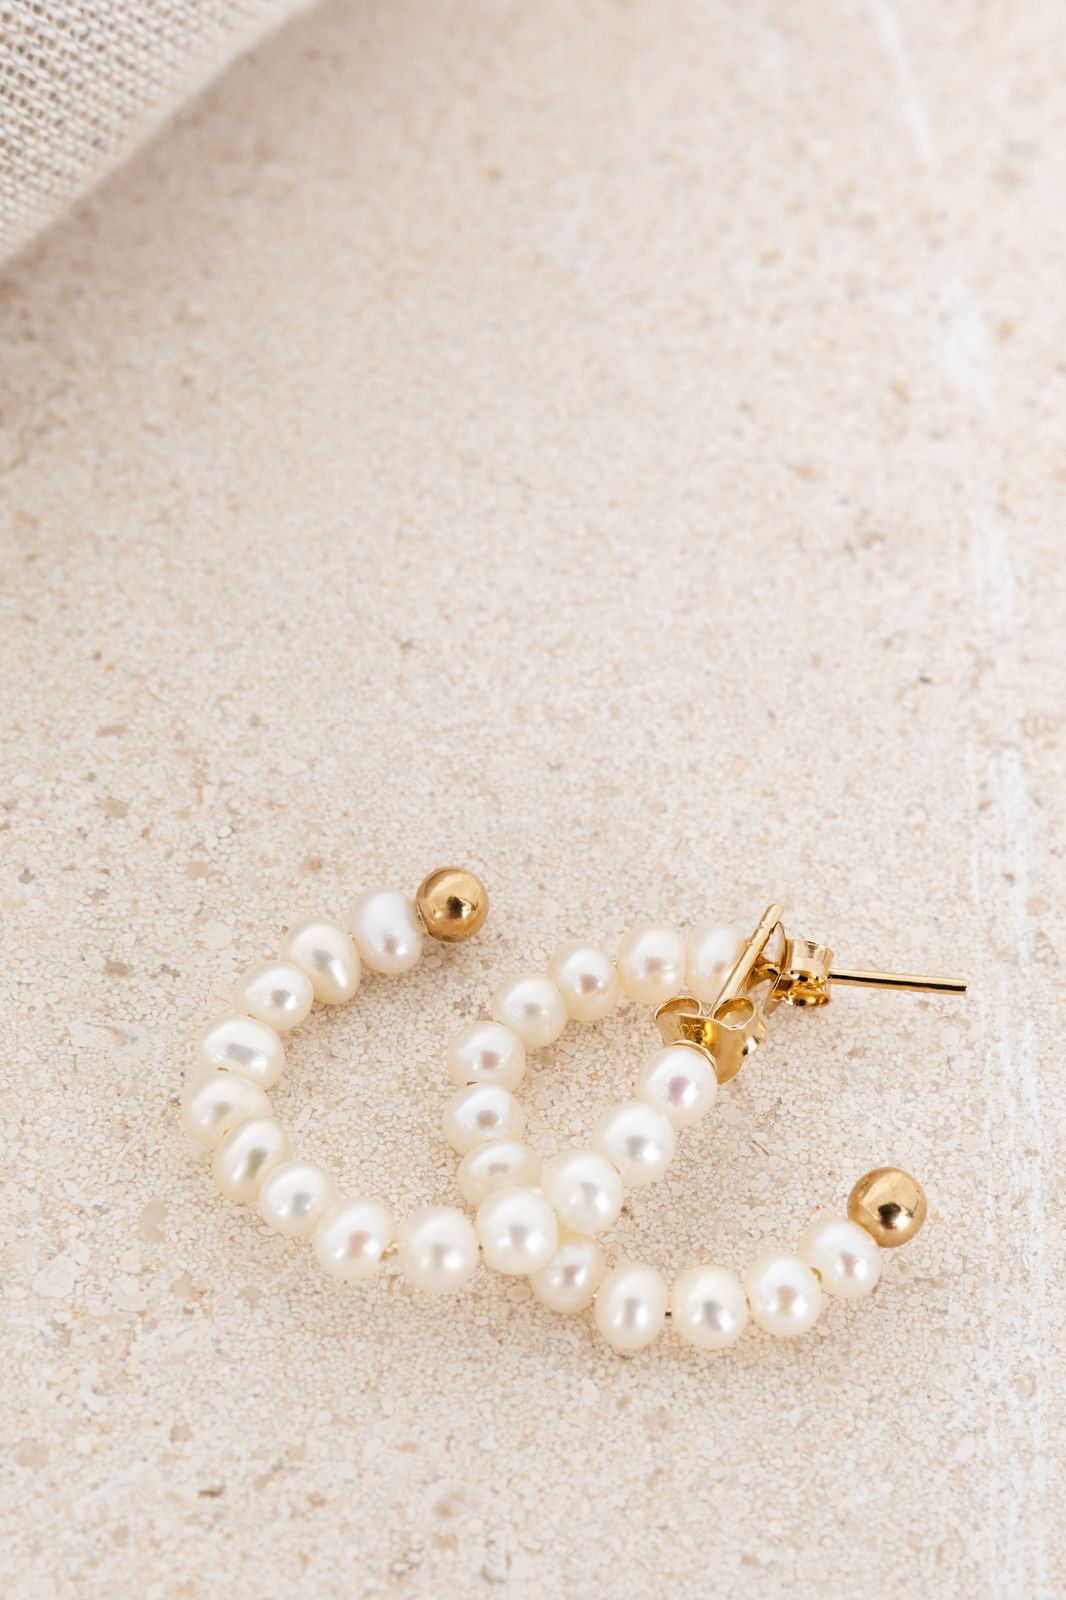 Anneaux plaqués or avec perles